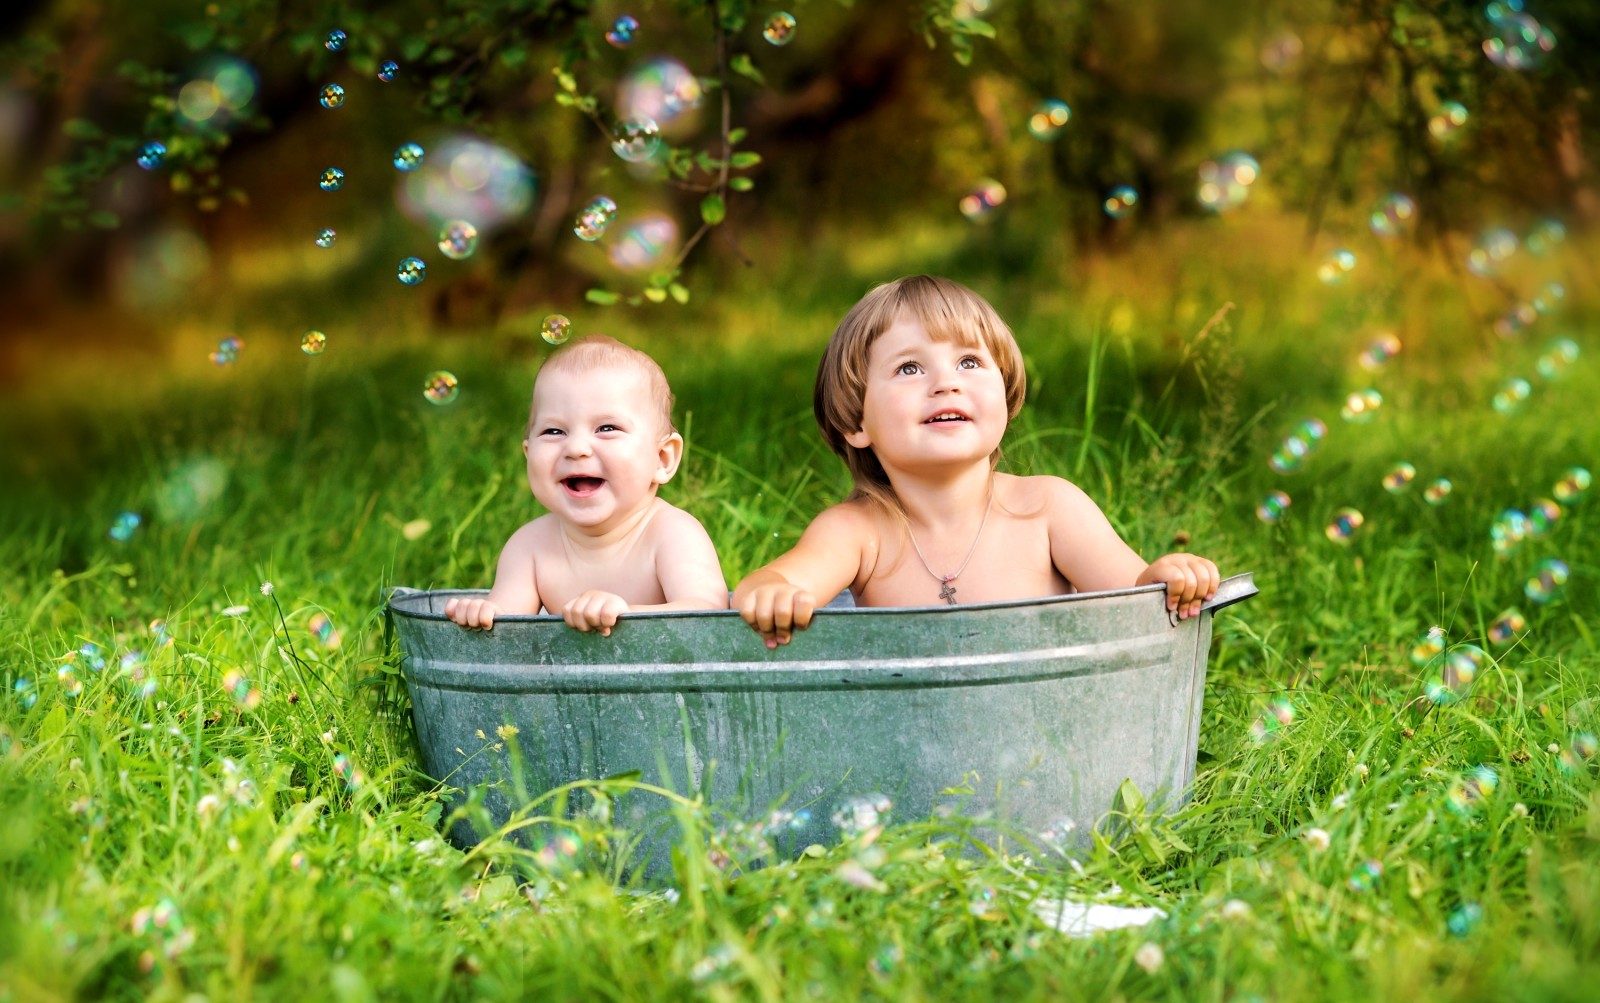 cỏ, mùa hè, bọn trẻ, trẻ em, Vui sướng, hạnh phúc, bong bóng, sự ngạc nhiên